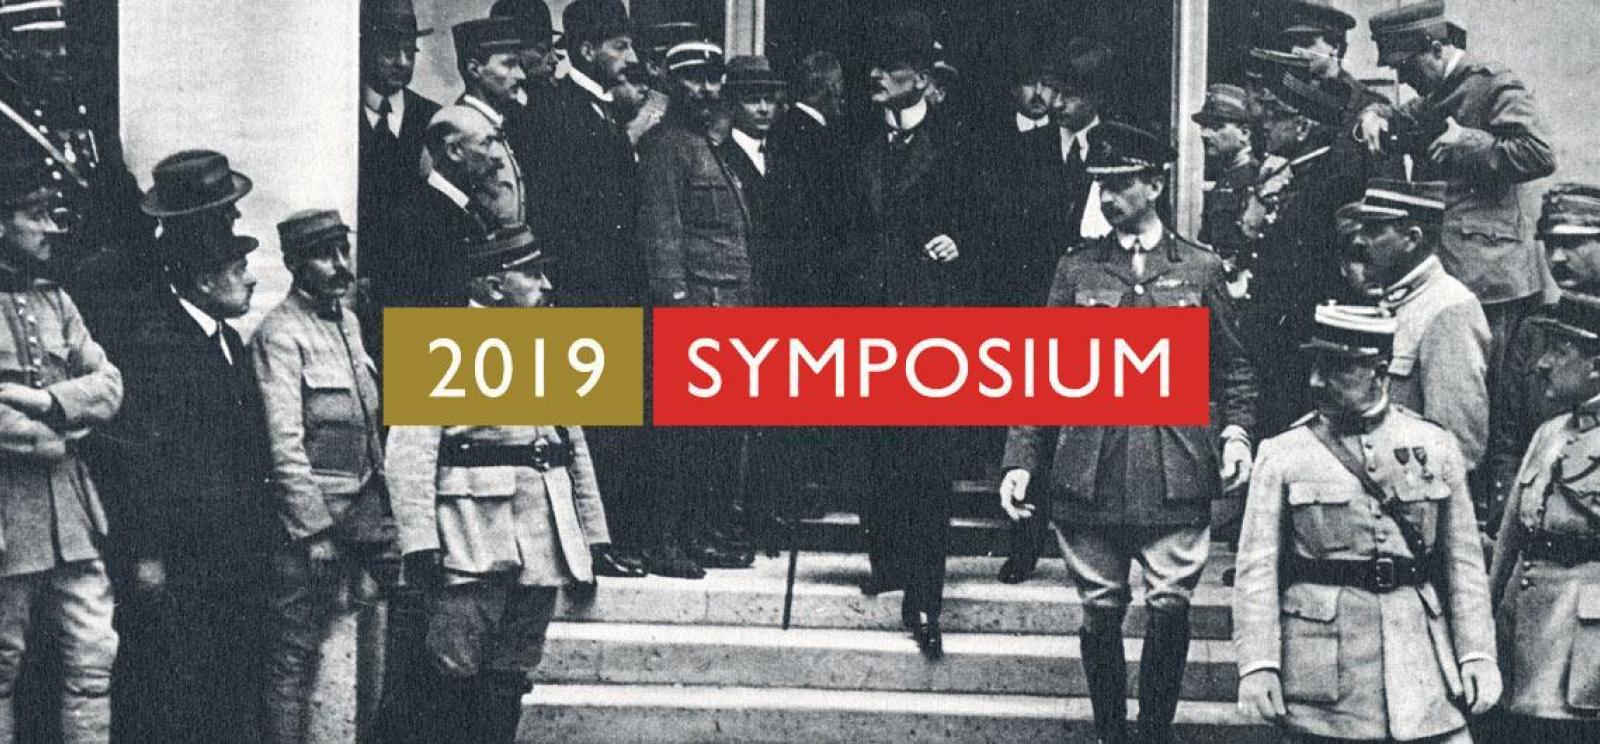 2019 Symposium logo graphic